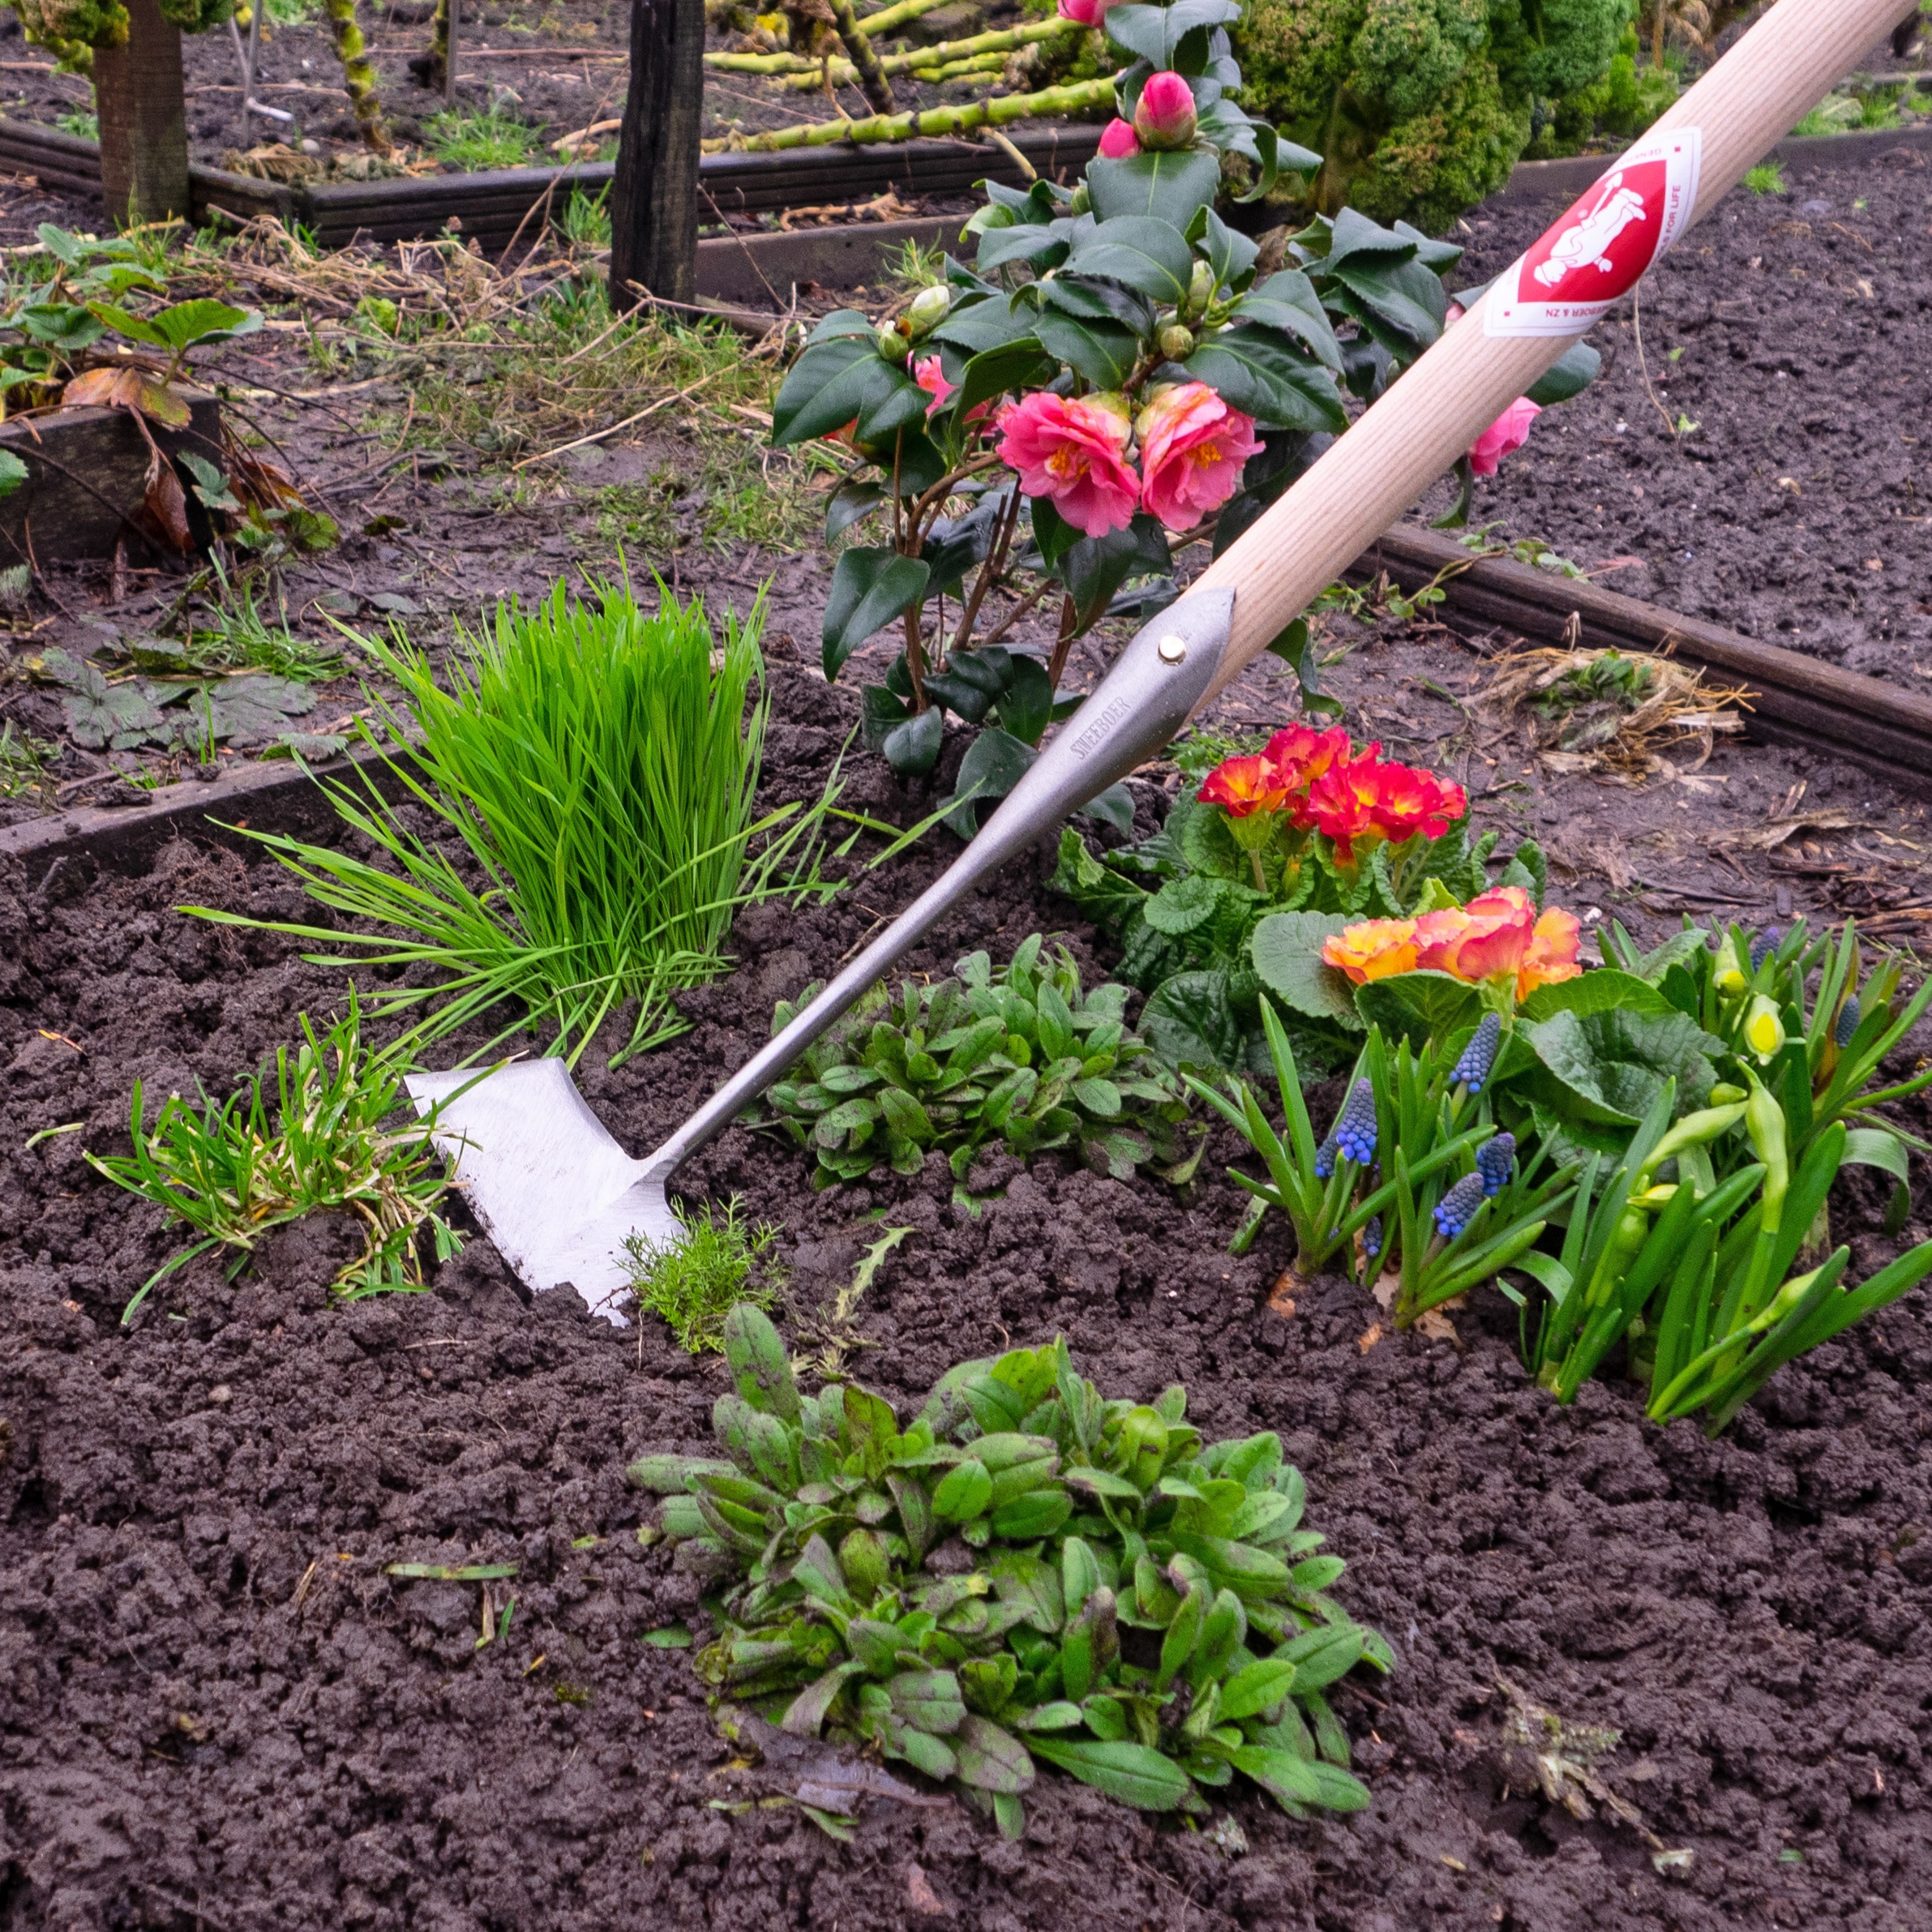 L'importance des poignées longues pour les outils de jardinage : Ergonomie et efficacité